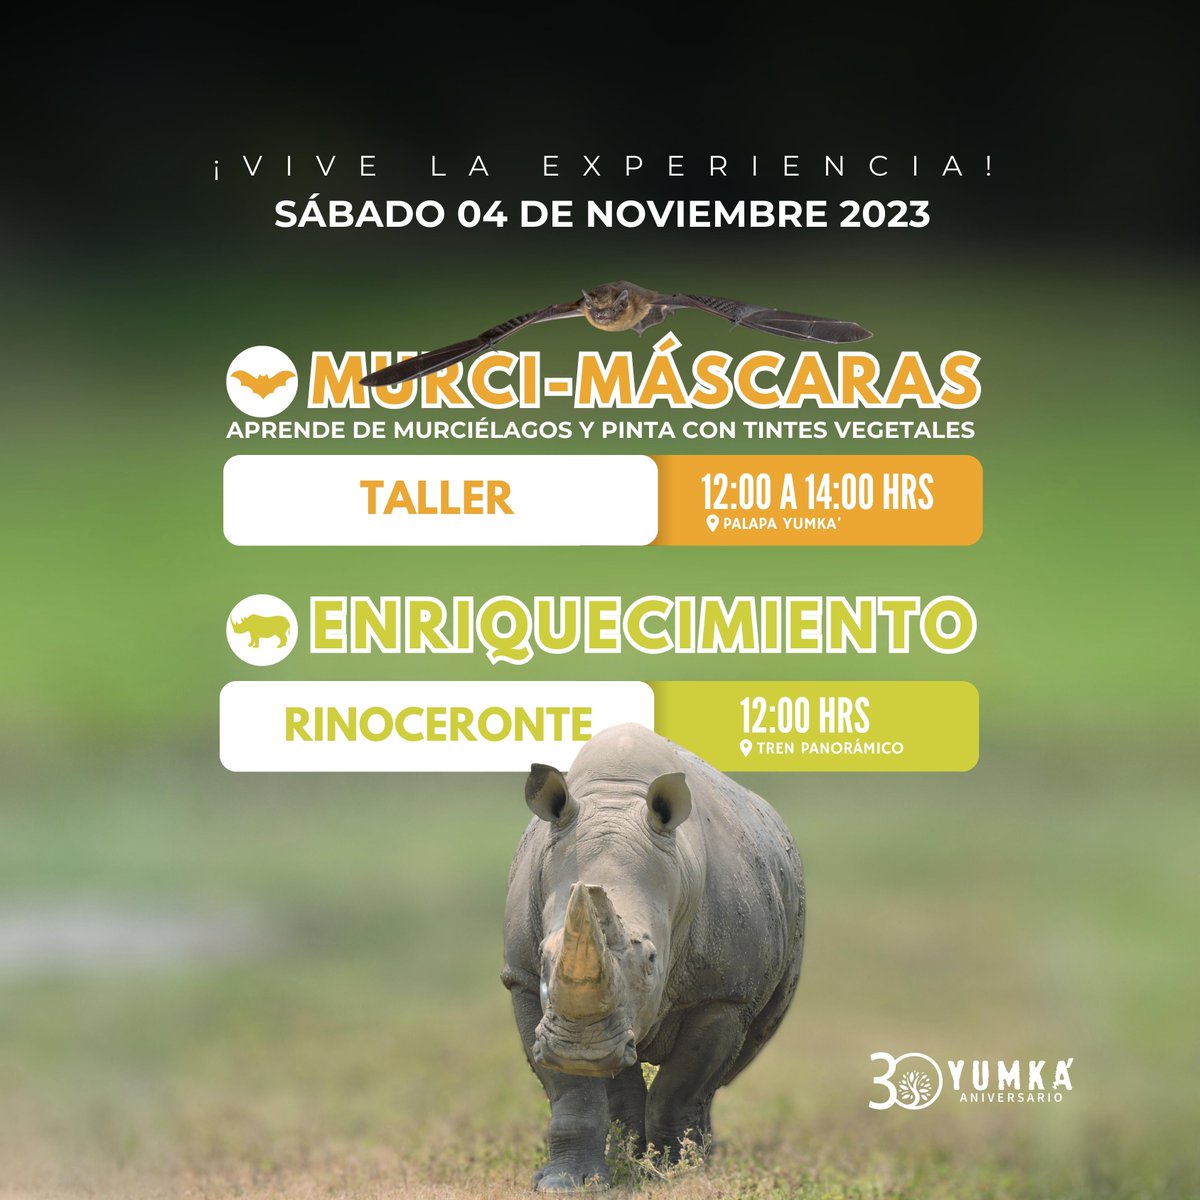 🤩 #ViveLaExperiencia del taller “Murci - Máscaras” 🦇 y el enriquecimiento de Rinoceronte 🦏